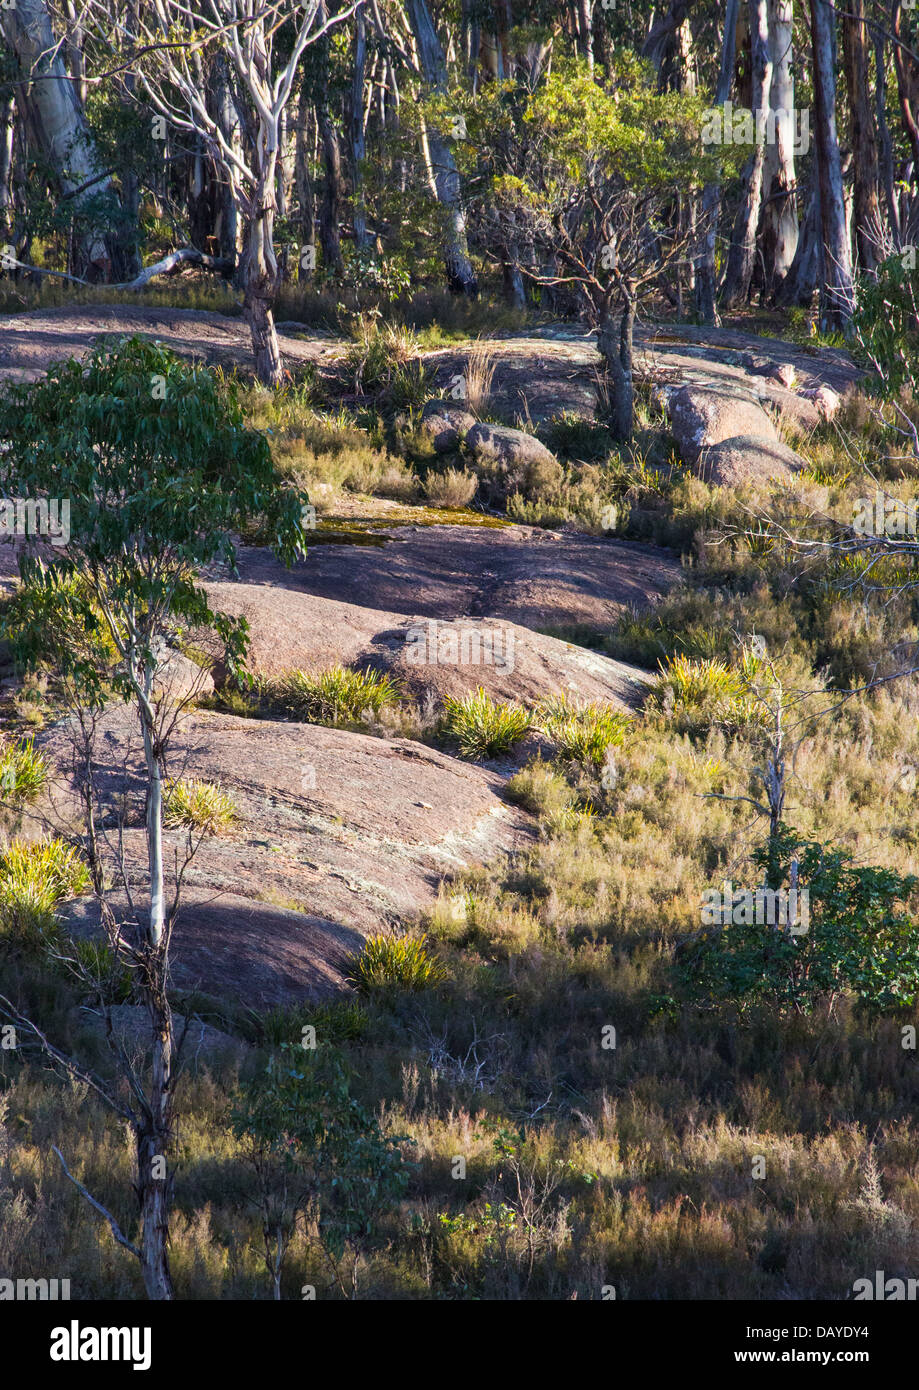 Snow gum forêt en parc national de Kanangra Boyd, NSW, Australie Banque D'Images